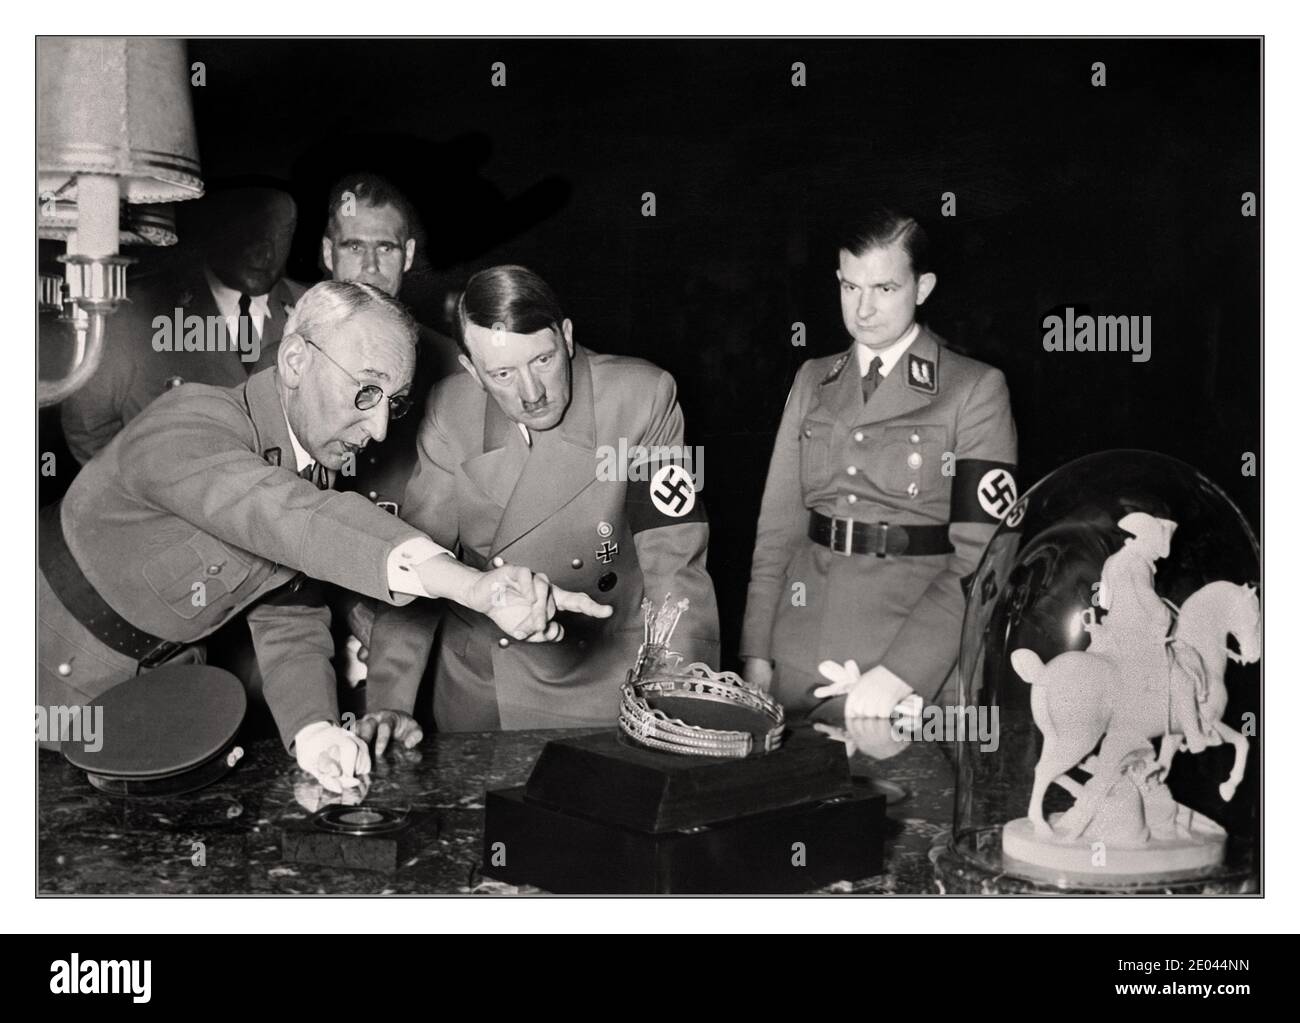 HITLER ART NAZI PILLAGE 1940 WW2 chancelier allemand nazi Adolf Hitler regardant une diadème et une sculpture de Napoléon Bonaparte lors de sa visite à une collection d'art pillé, pour sa collection personnelle. Rudolf Hess se tient en arrière-plan. Banque D'Images